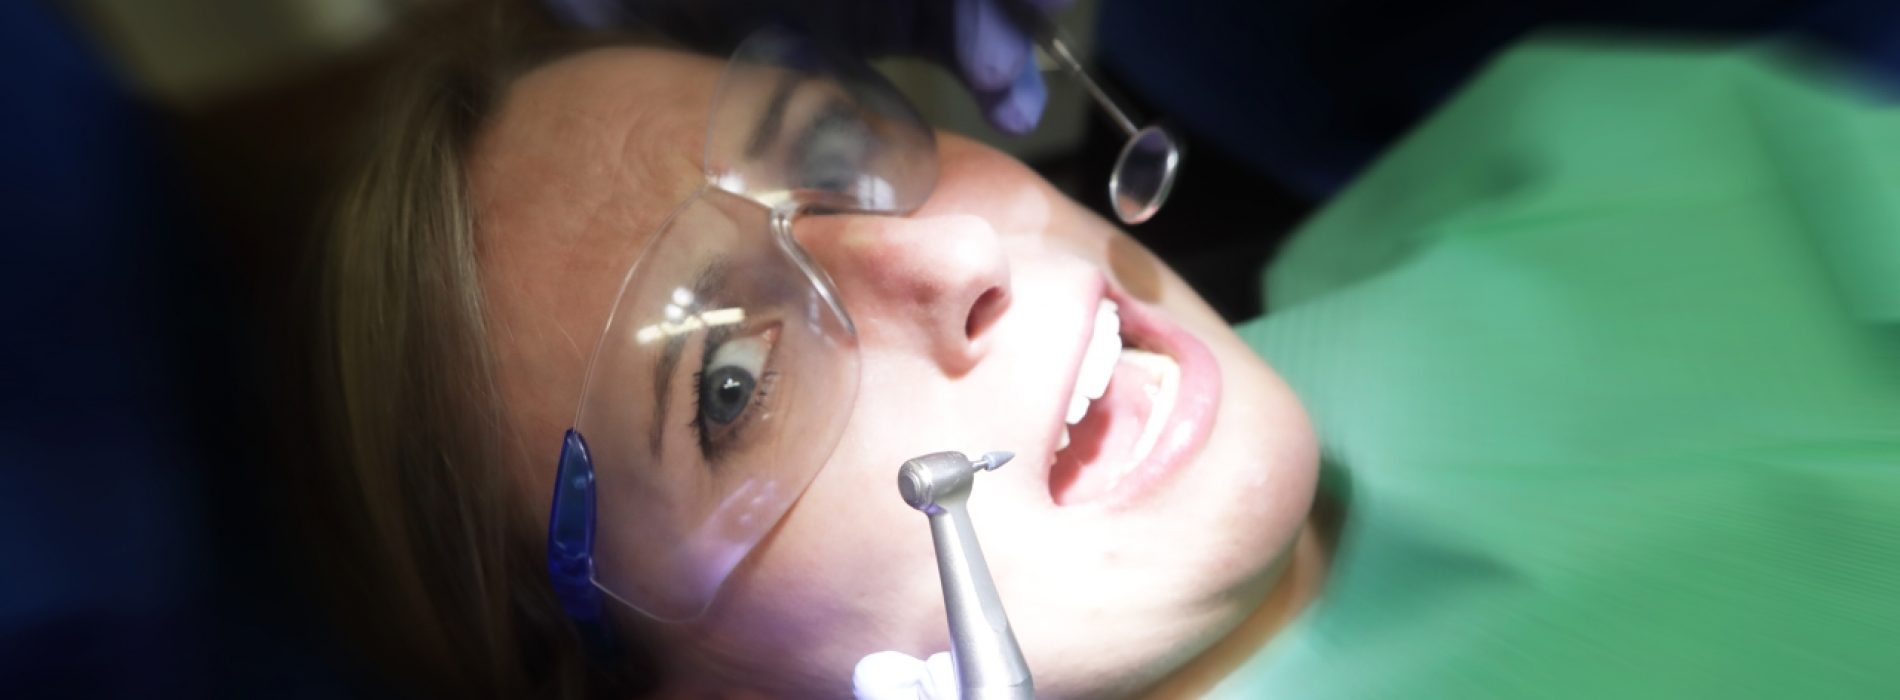 GLOEDNIEUW ONDERZOEK vindt dat mensen met tandvleesaandoeningen een verhoogd risico hebben op psychische aandoeningen